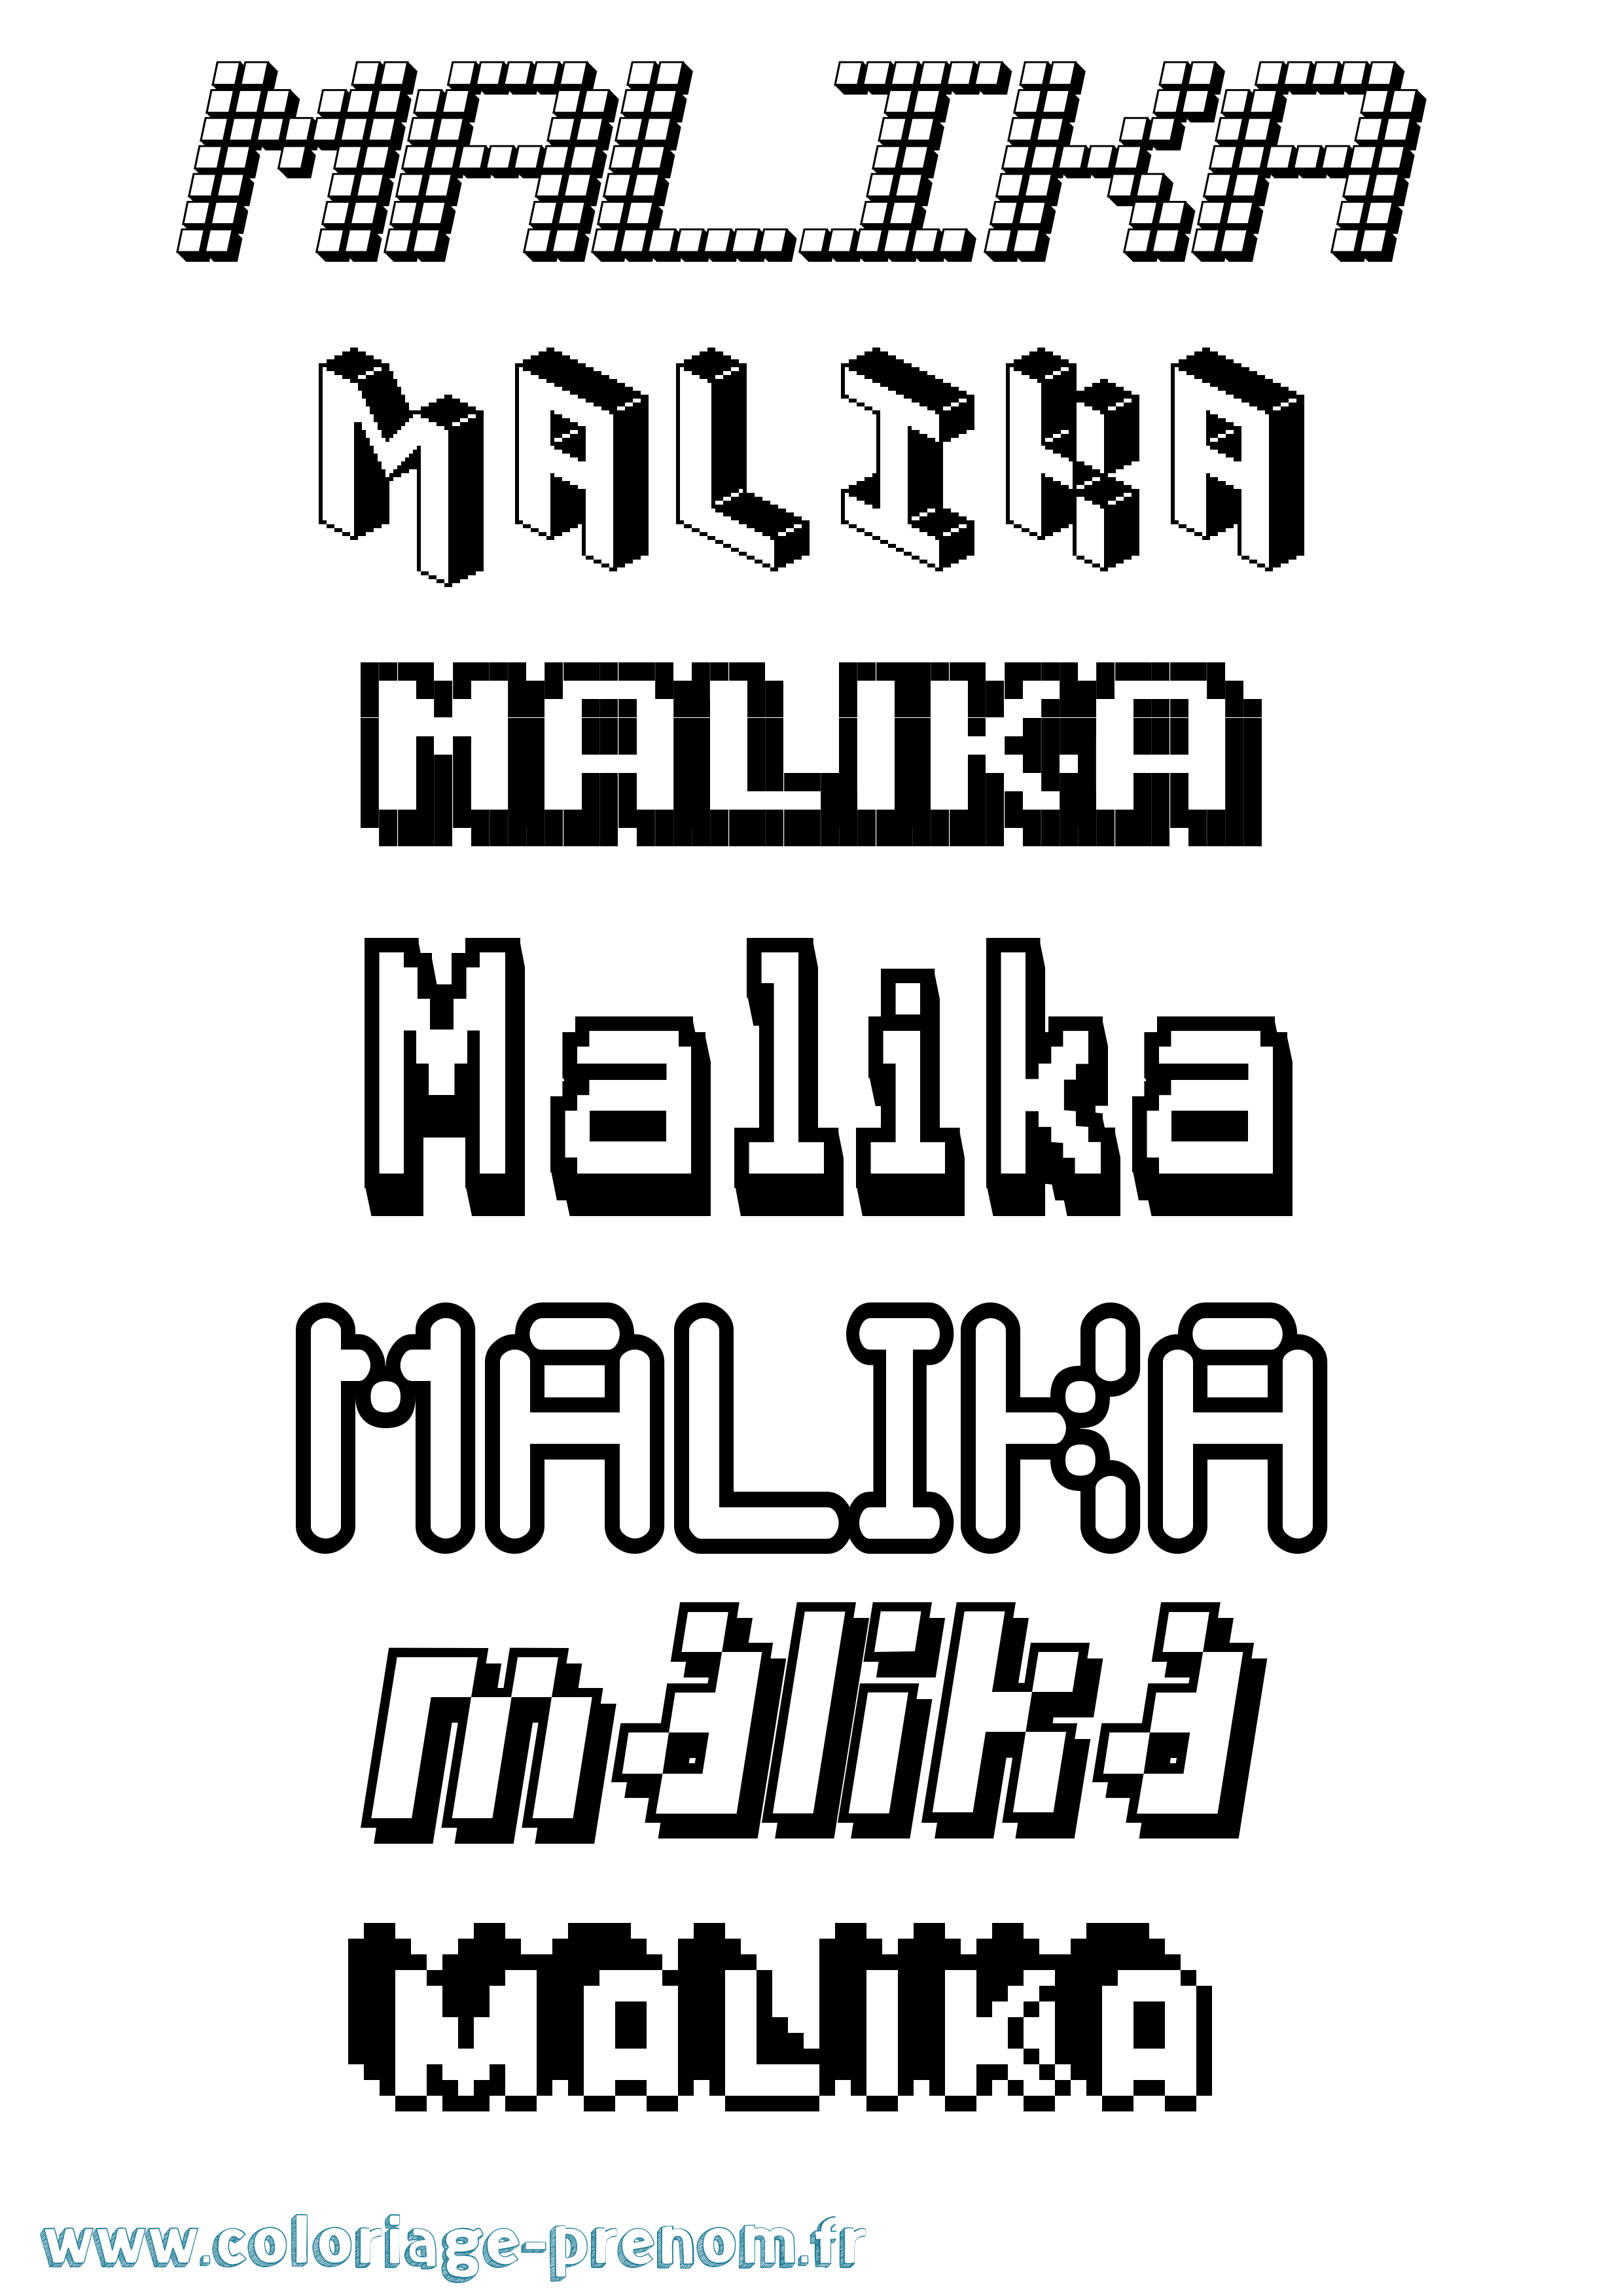 Coloriage prénom Malika